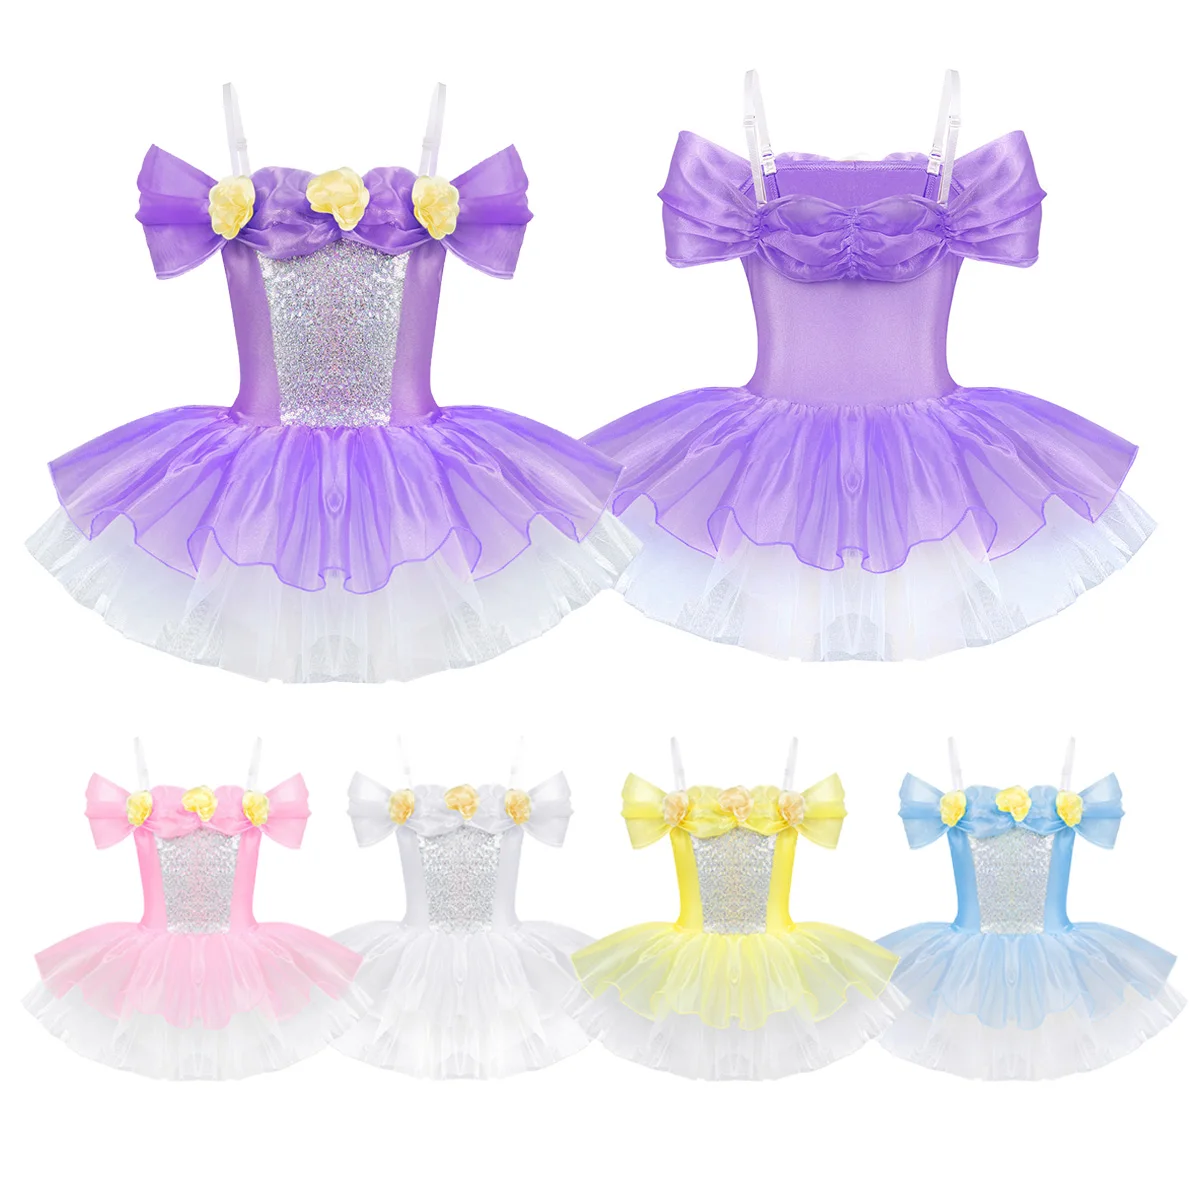 Балетное платье-пачка; гимнастическое трико для девочек; Одежда для танцев; одежда для детского балета; Костюм Балерины; балетное платье-пачка с объемным цветочным рисунком